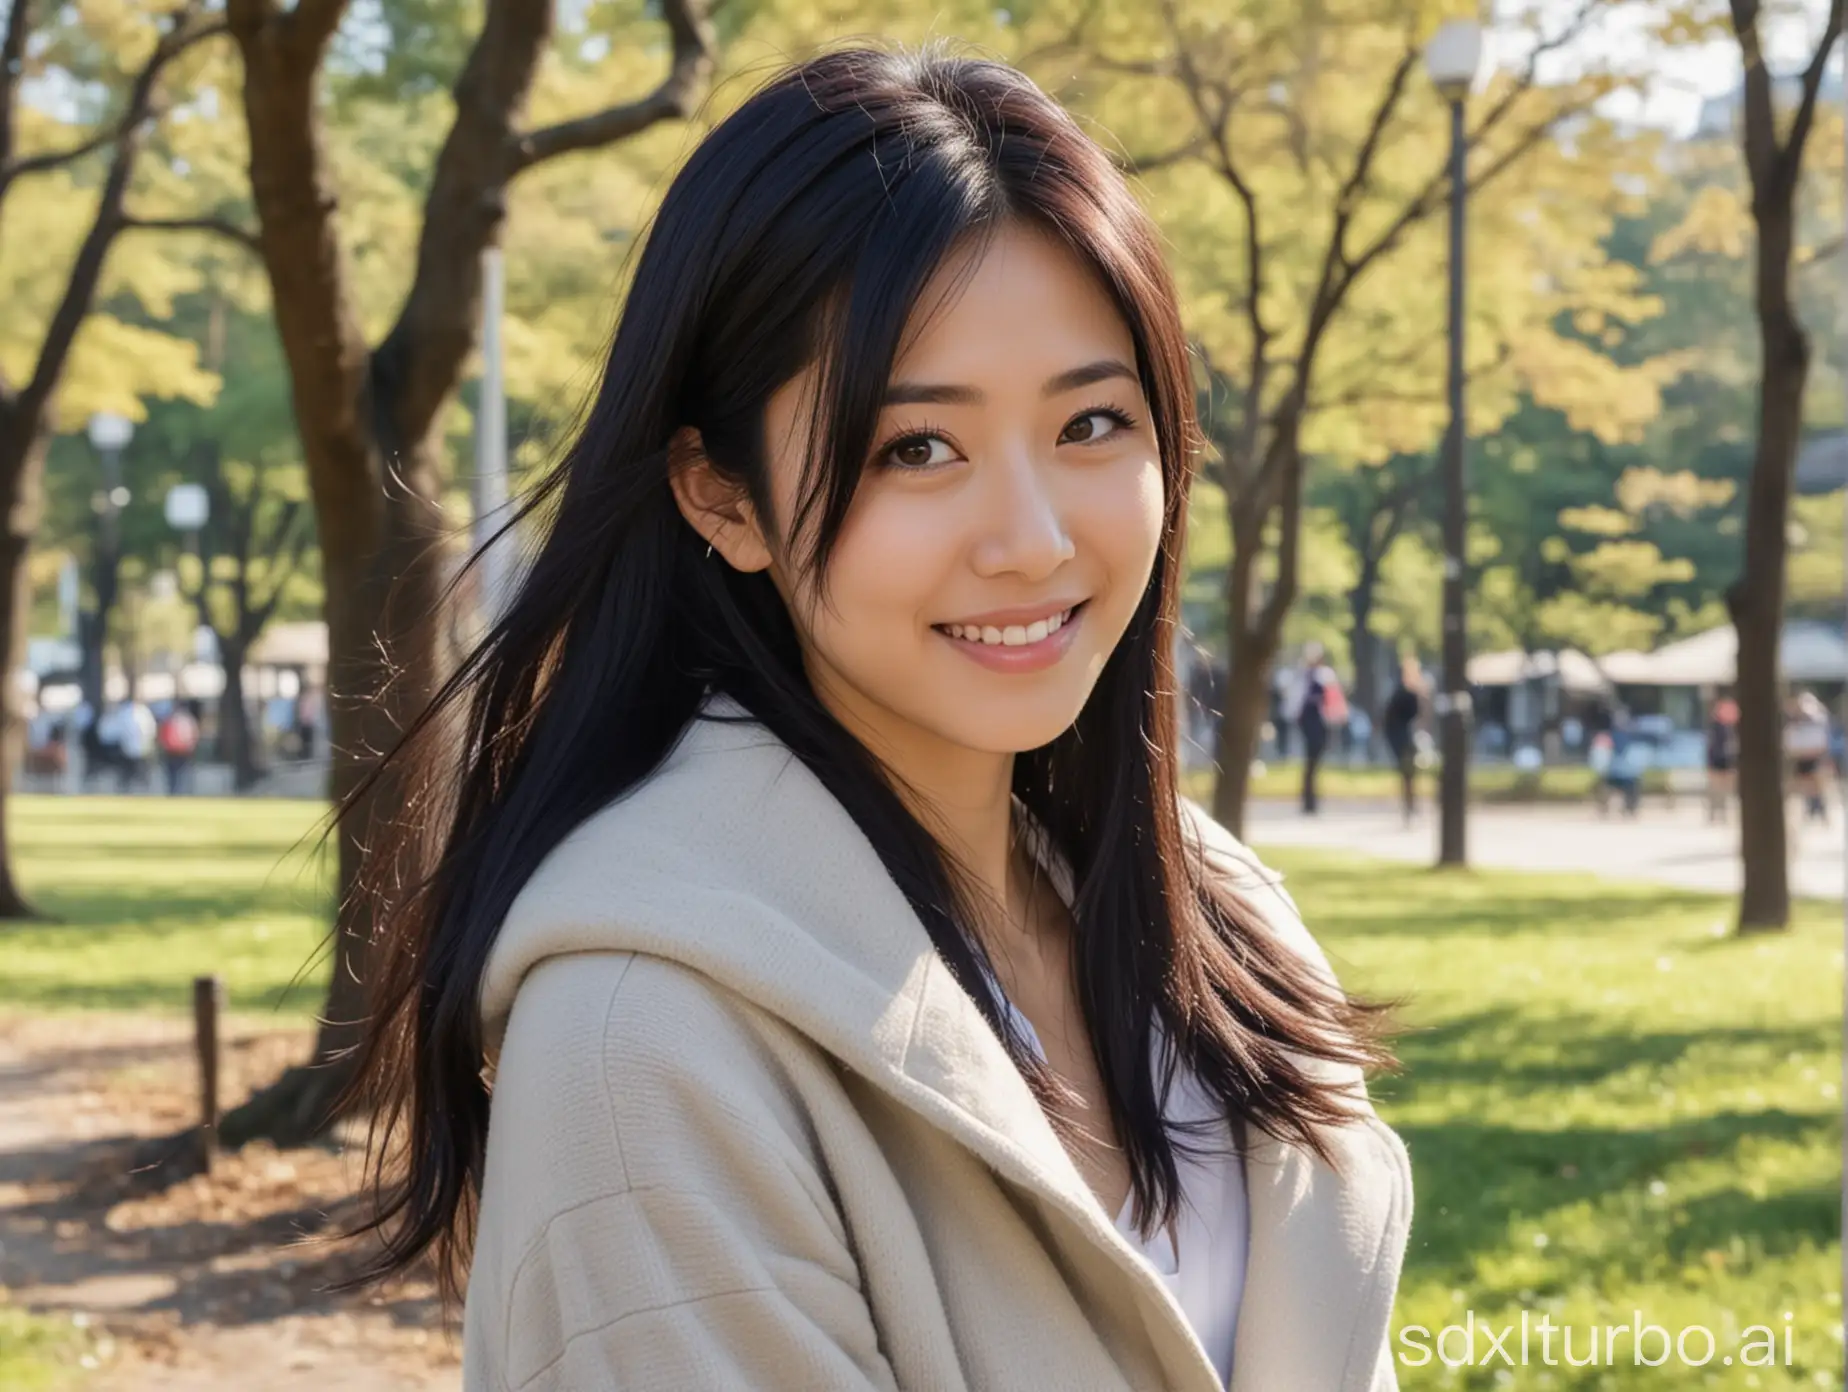 Elegant-Japanese-Instagram-Model-Smiling-in-Park-Setting